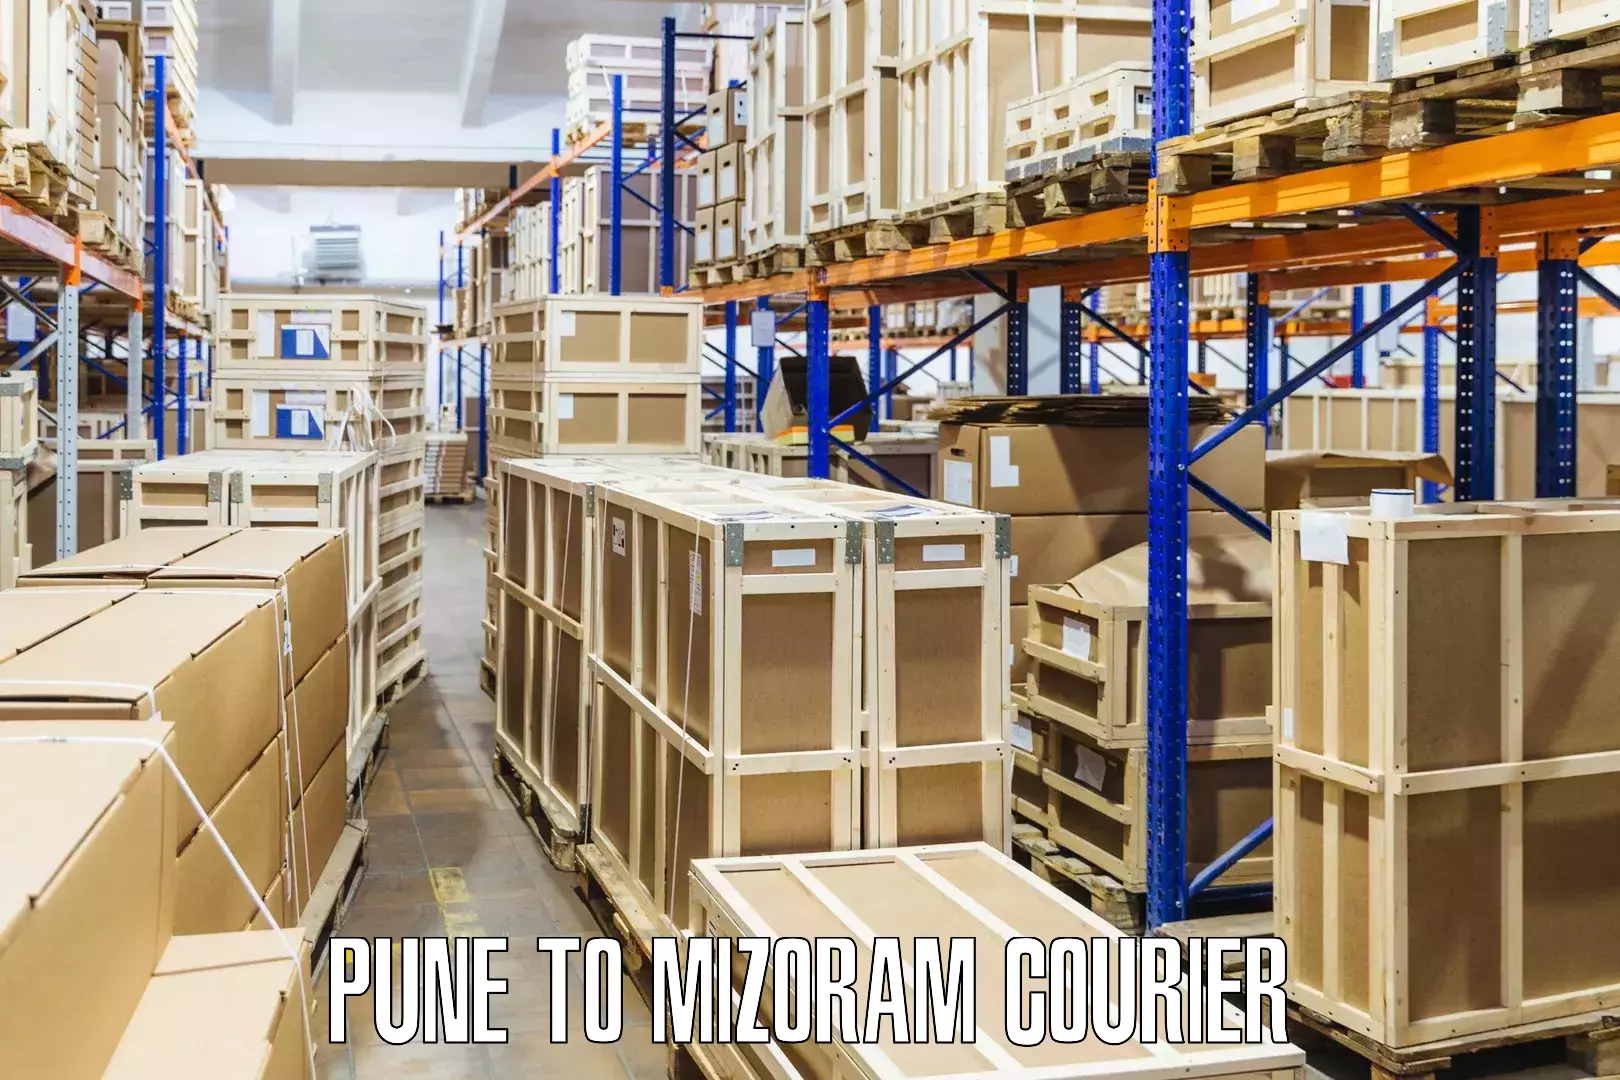 Customized delivery options Pune to Khawzawl